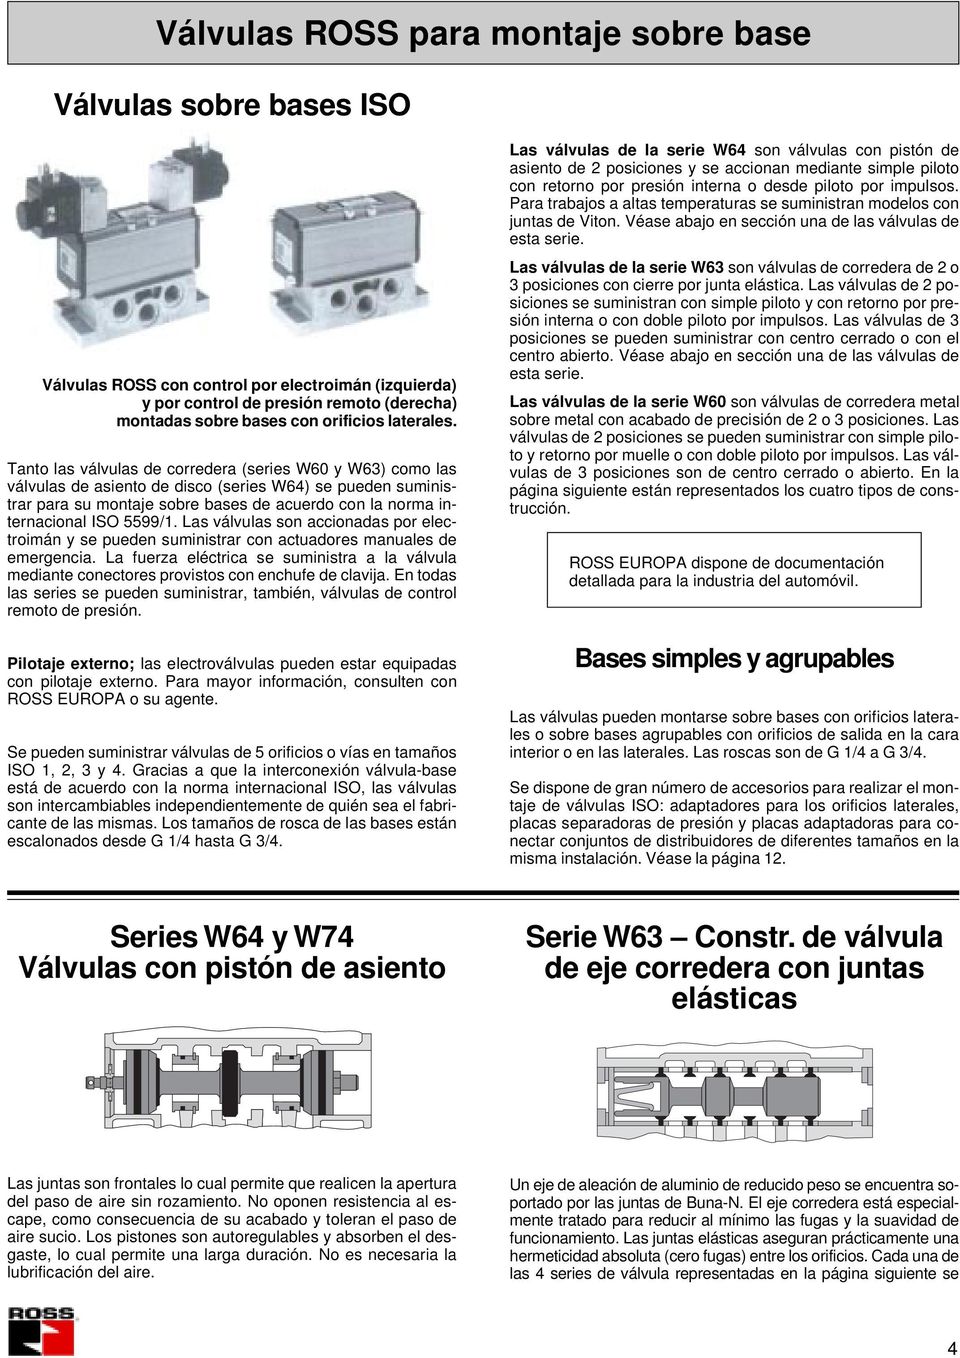 Tanto las válvulas de corredera (series W60 y W6) como las válvulas de asiento de disco (series W6) se pueden suministrar para su montaje sobre bases de acuerdo con la norma internacional ISO 5599/.